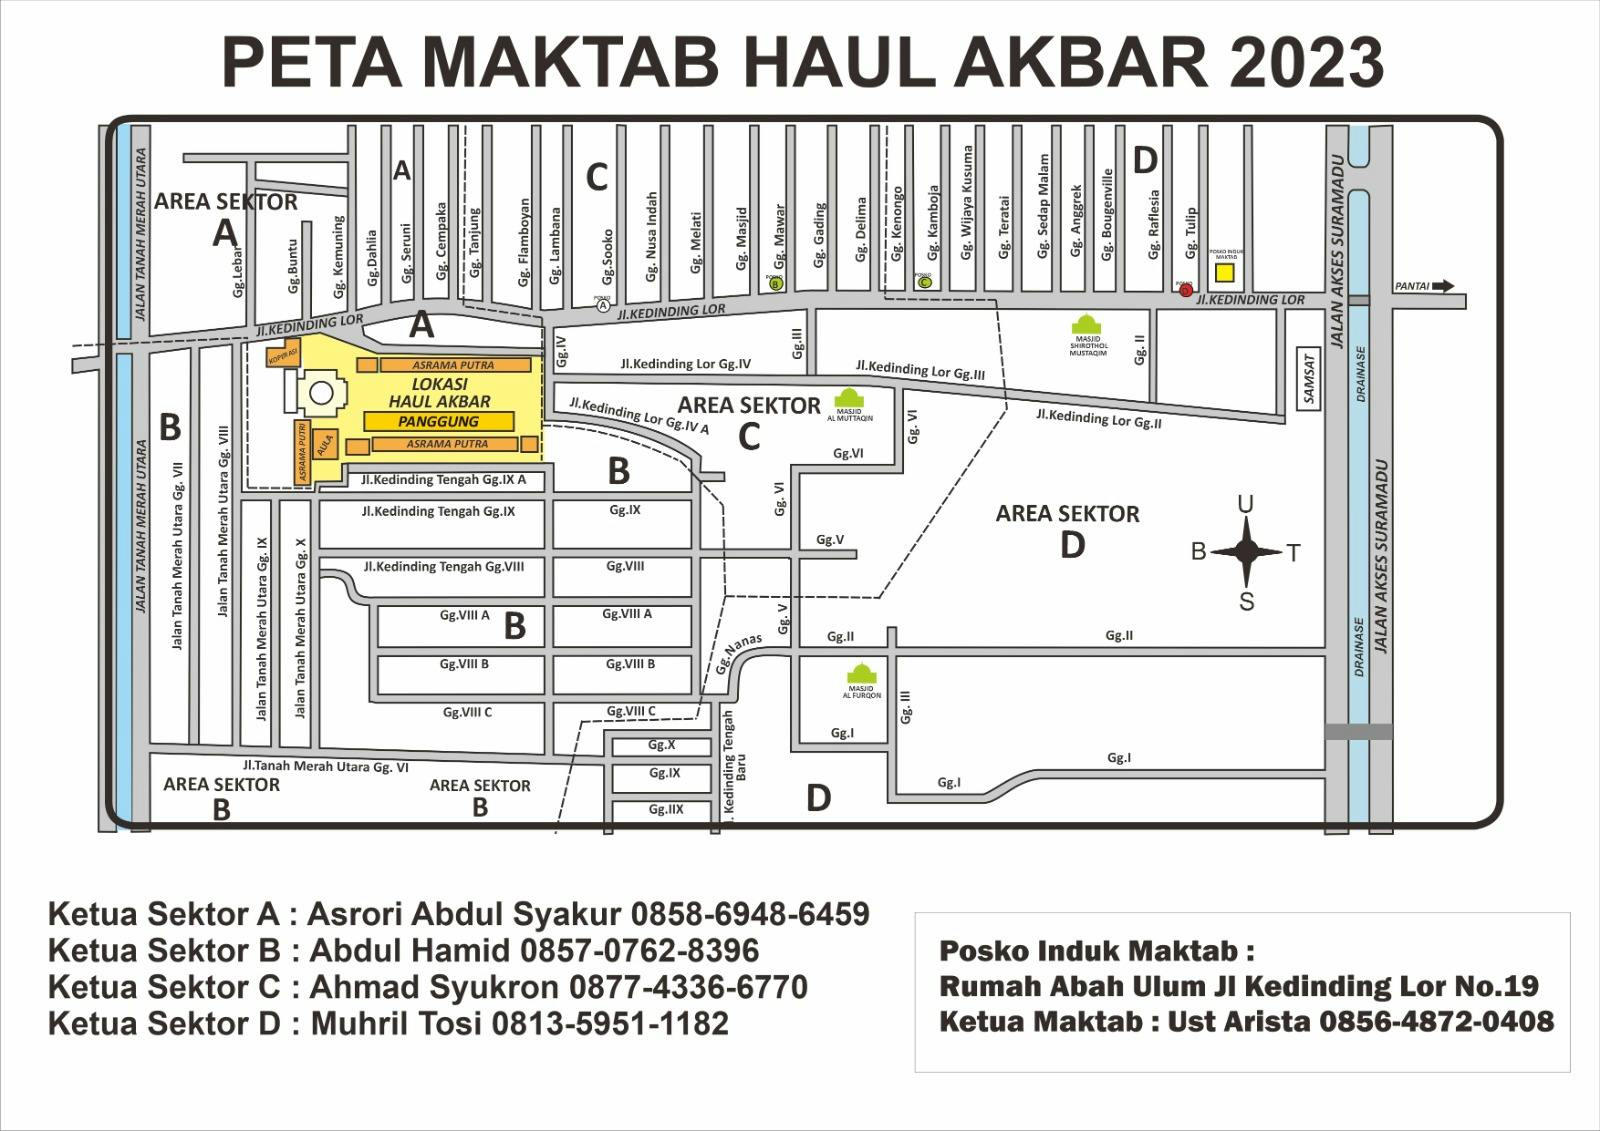 Peta Maktab Haul Akbar 2023